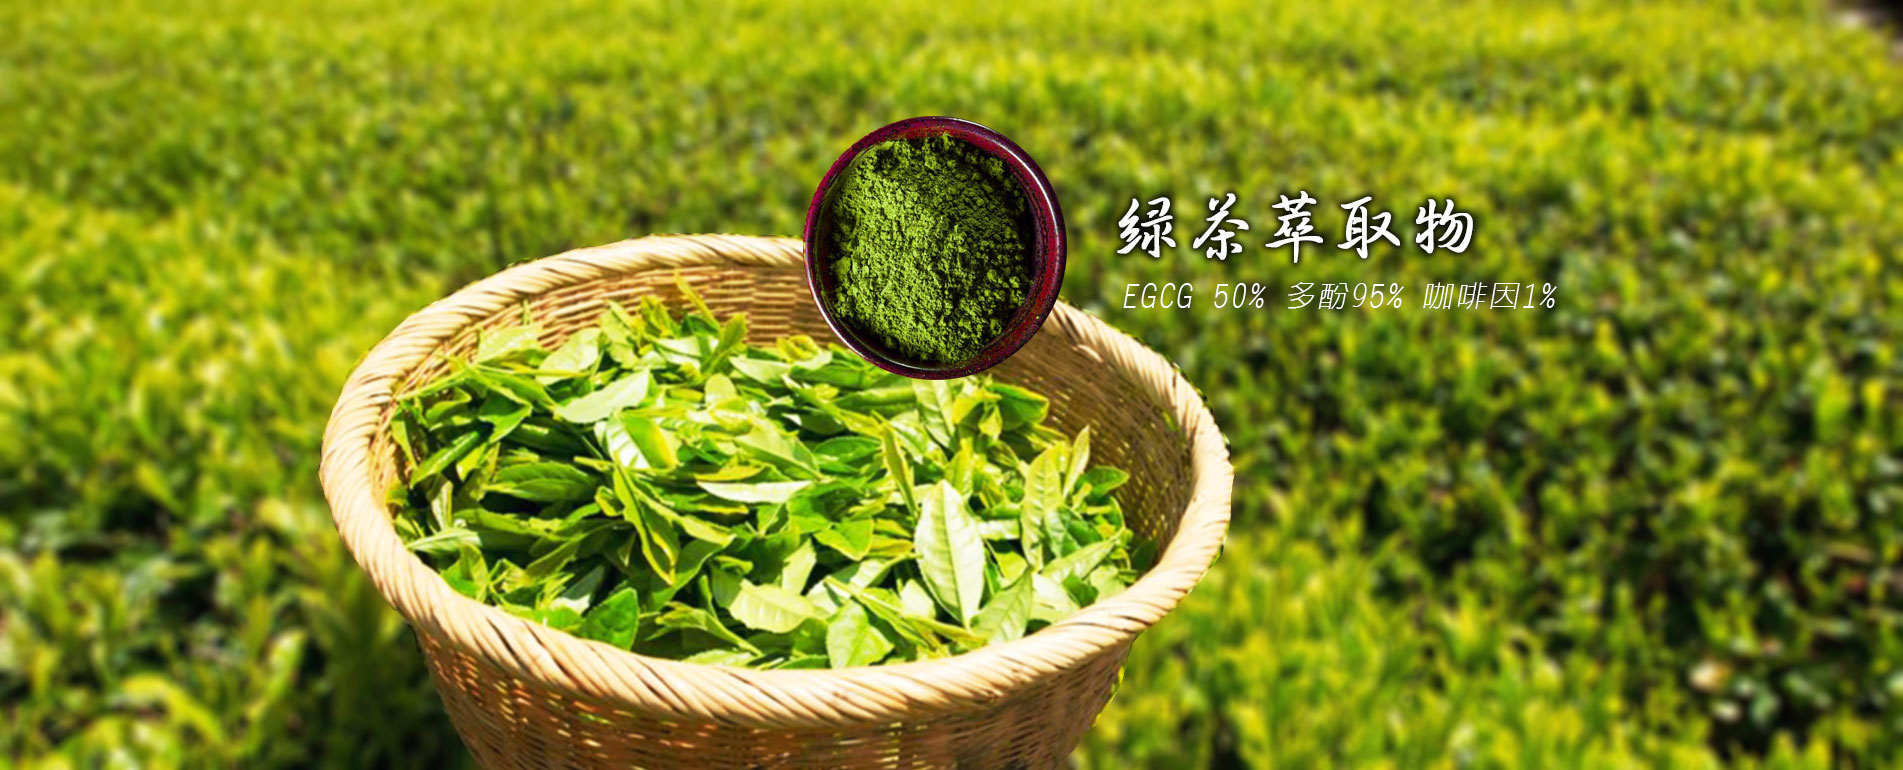 綠茶萃取物EGCG 50%多酚95% 咖啡因 1%